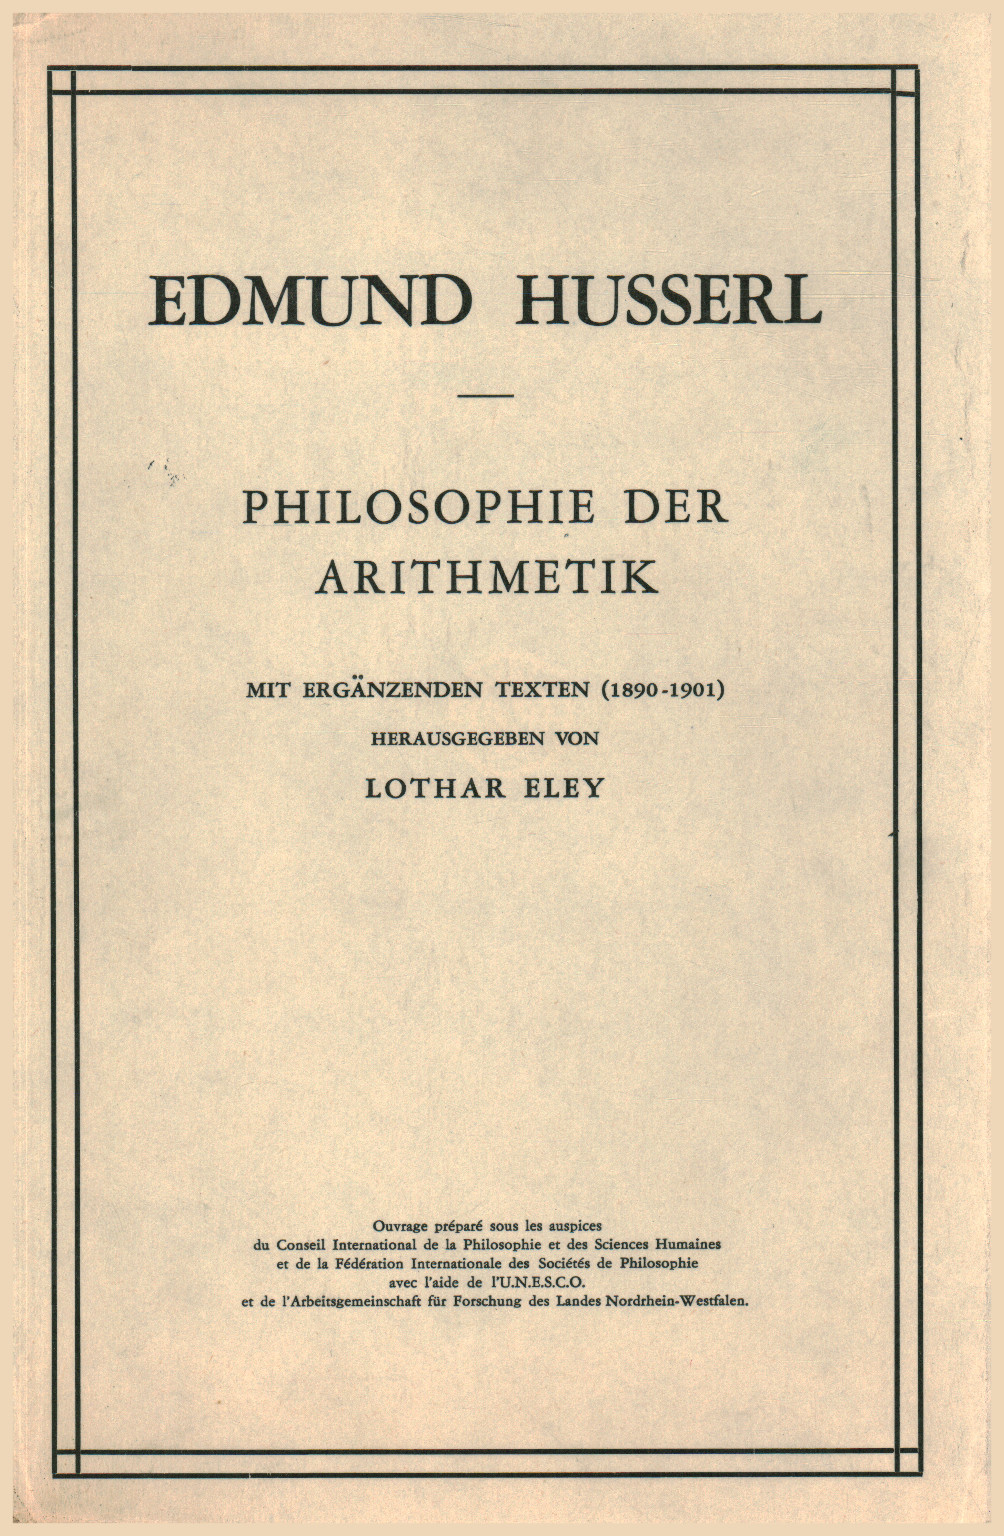 Philosophie der arithmetik, s.a.